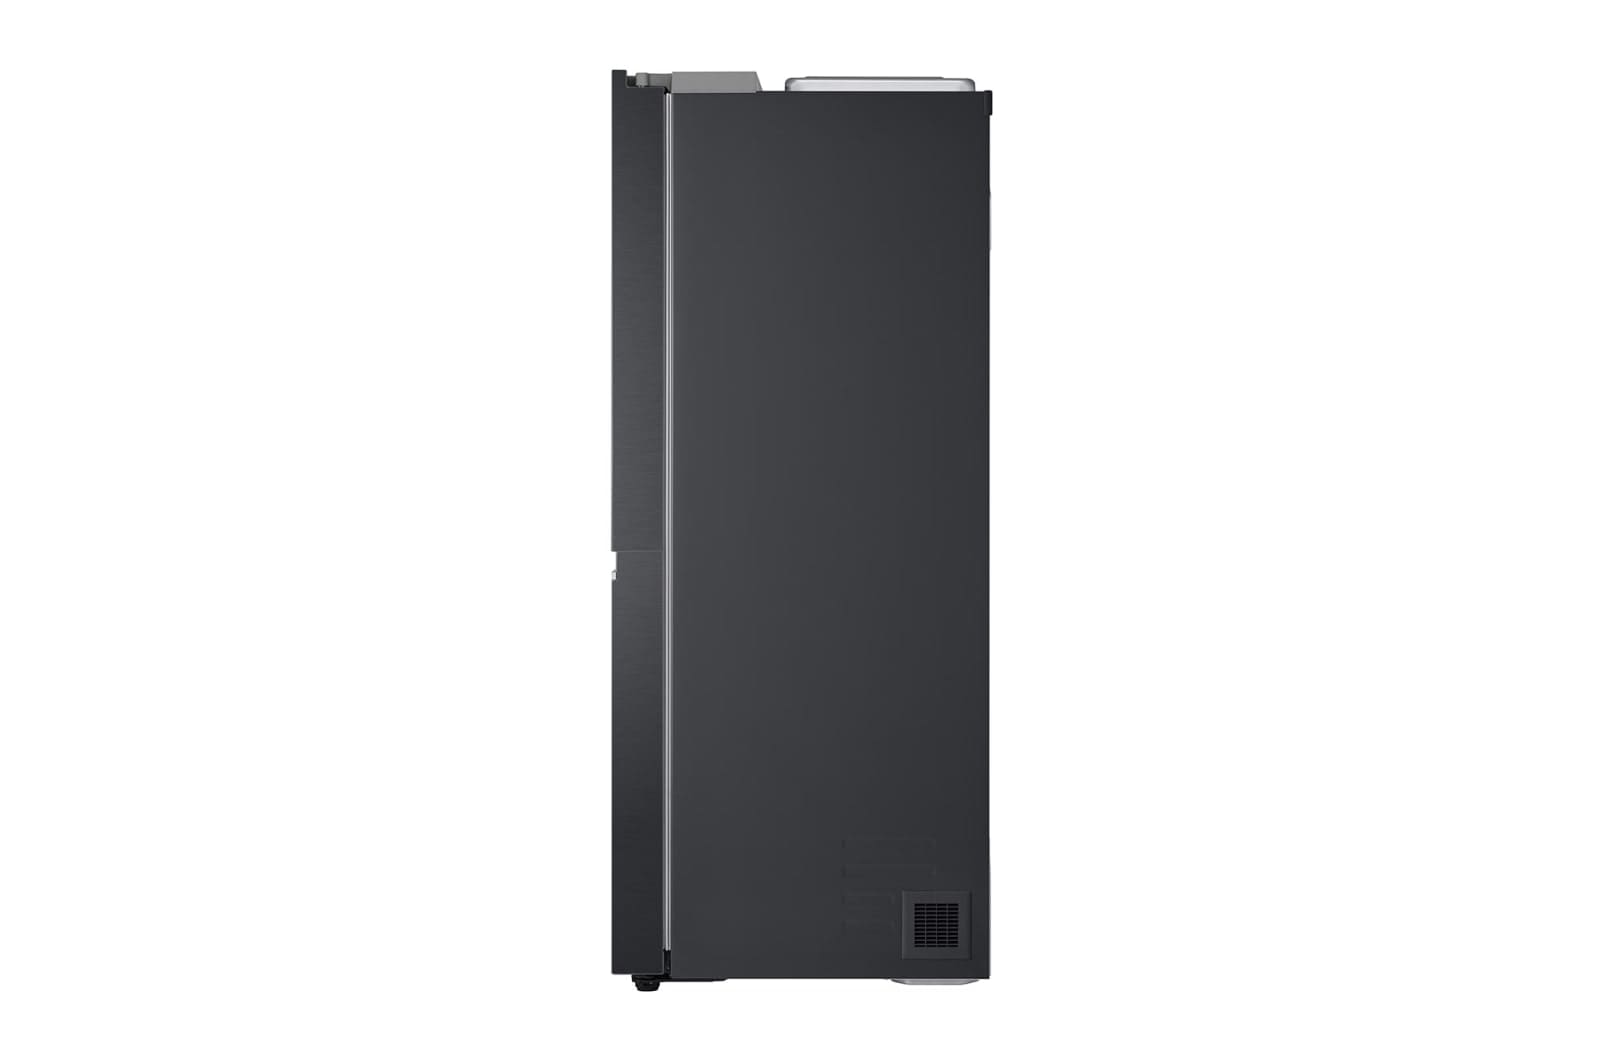 LG-694L-Side-by-side-fridge-11.jpg